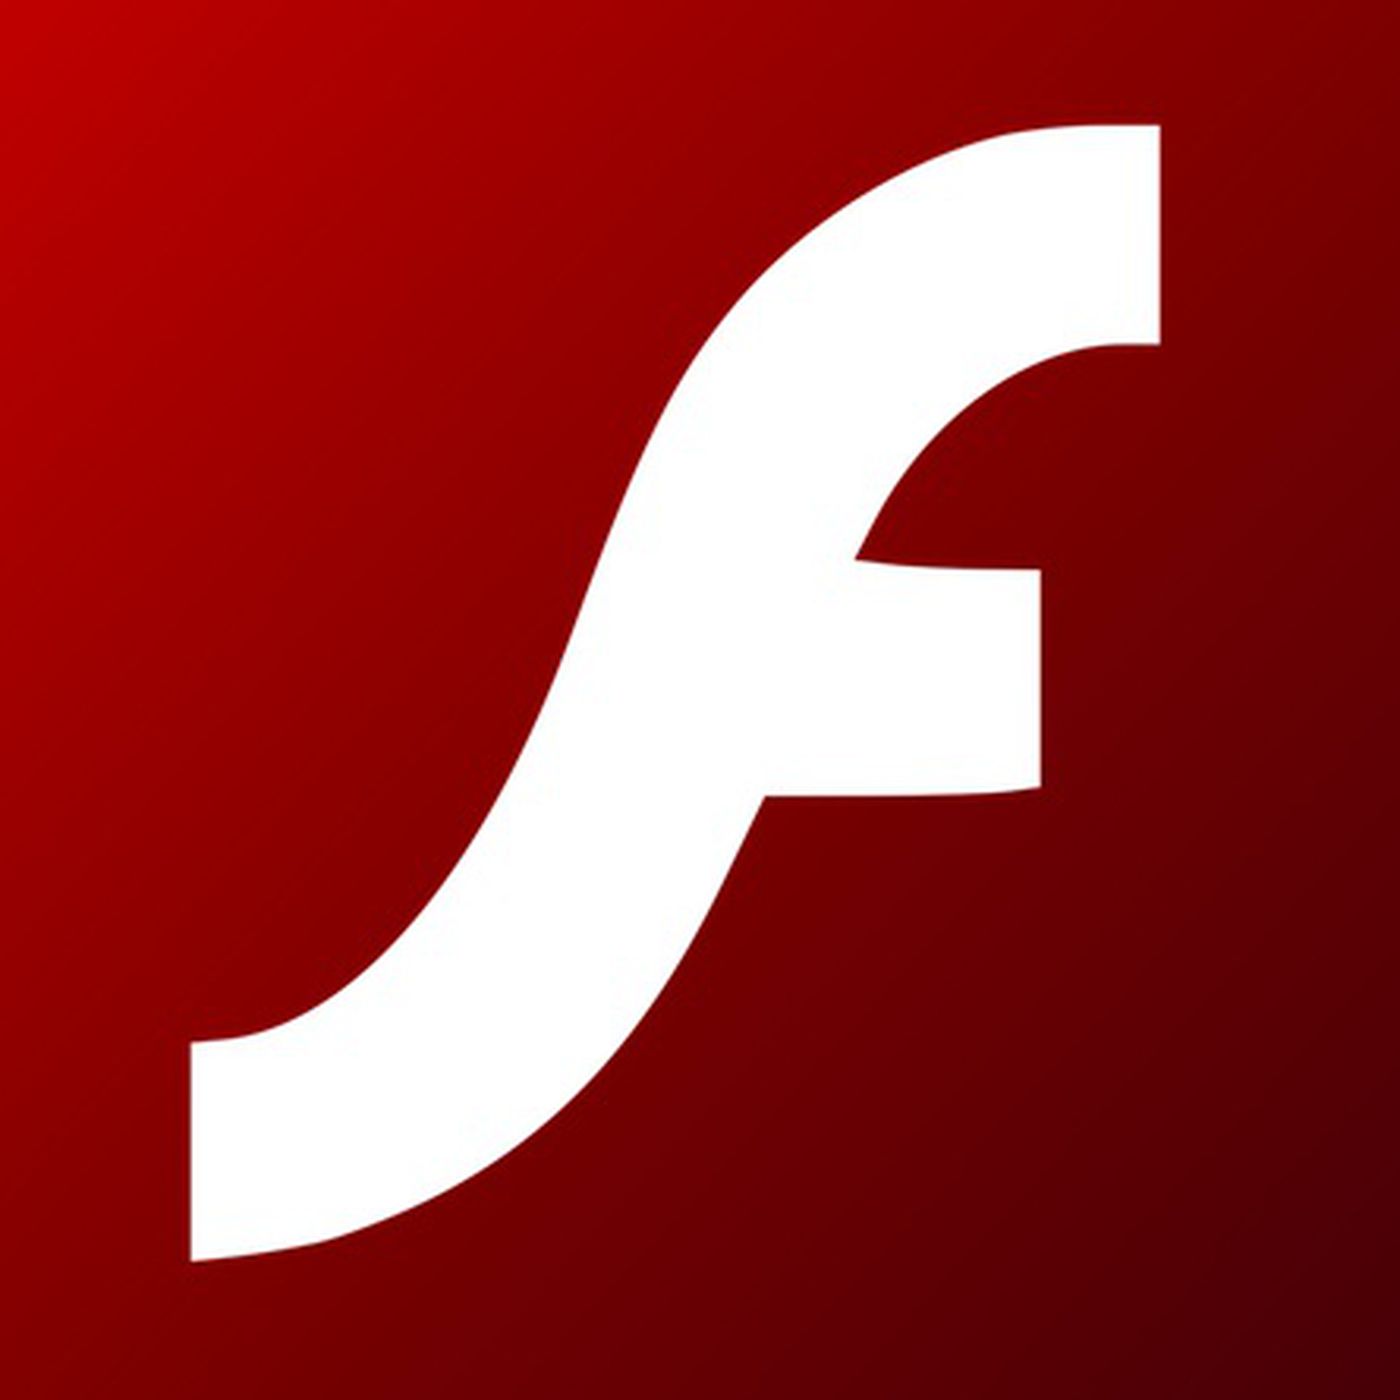 Pengertian Adobe Flash Sejarah Fungsi Kelebihan 